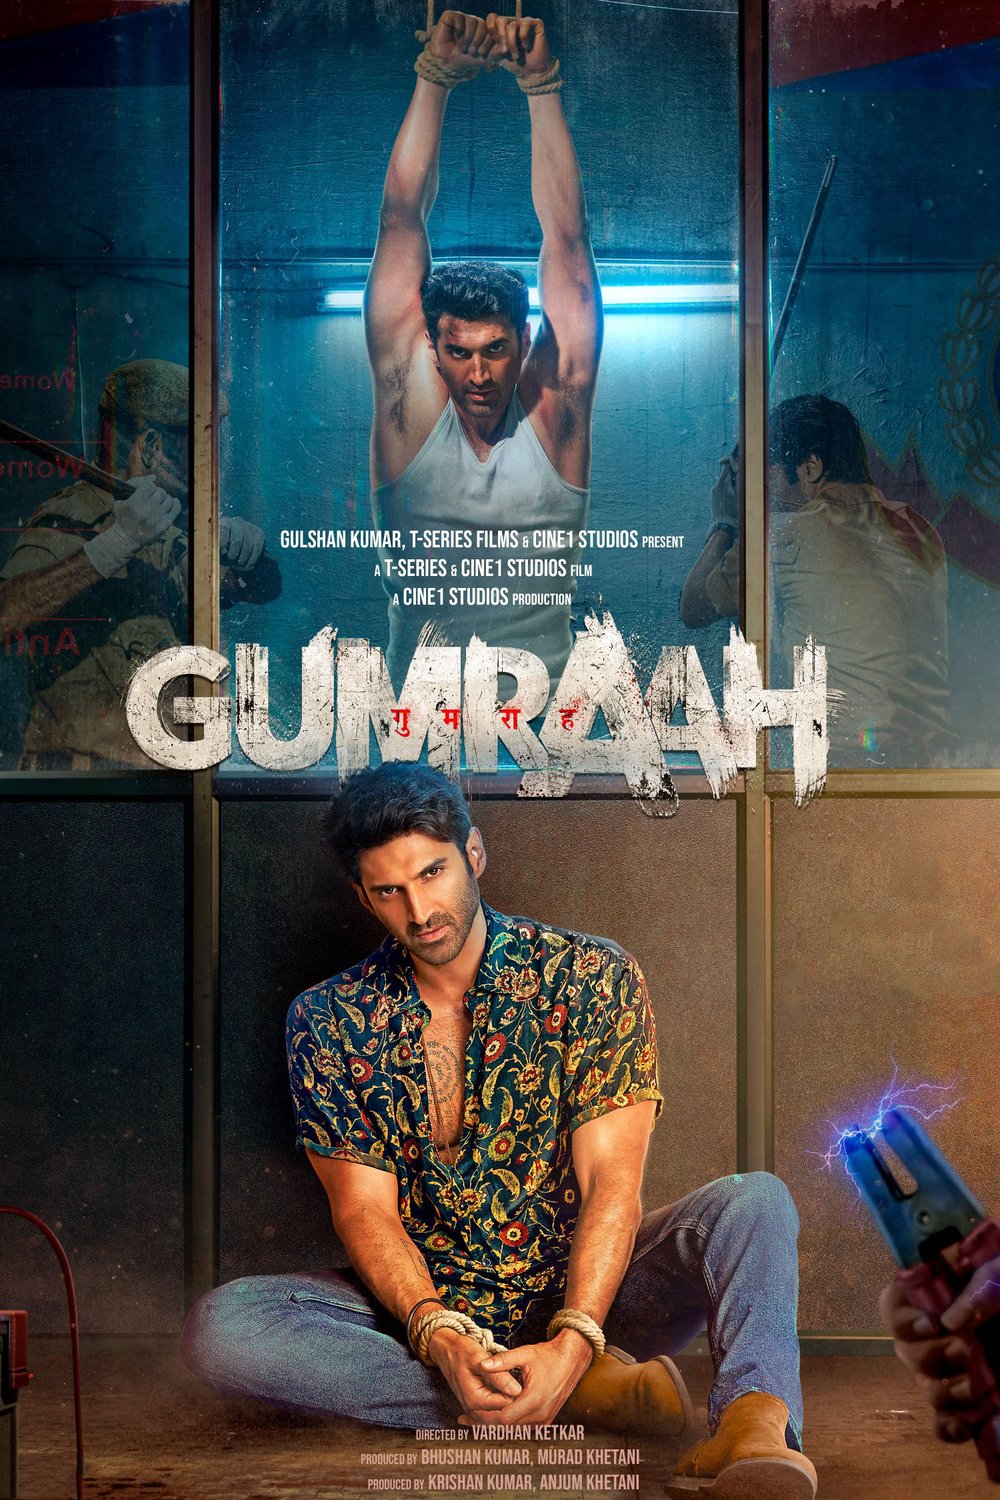 L'affiche originale du film Gumraah en Hindi